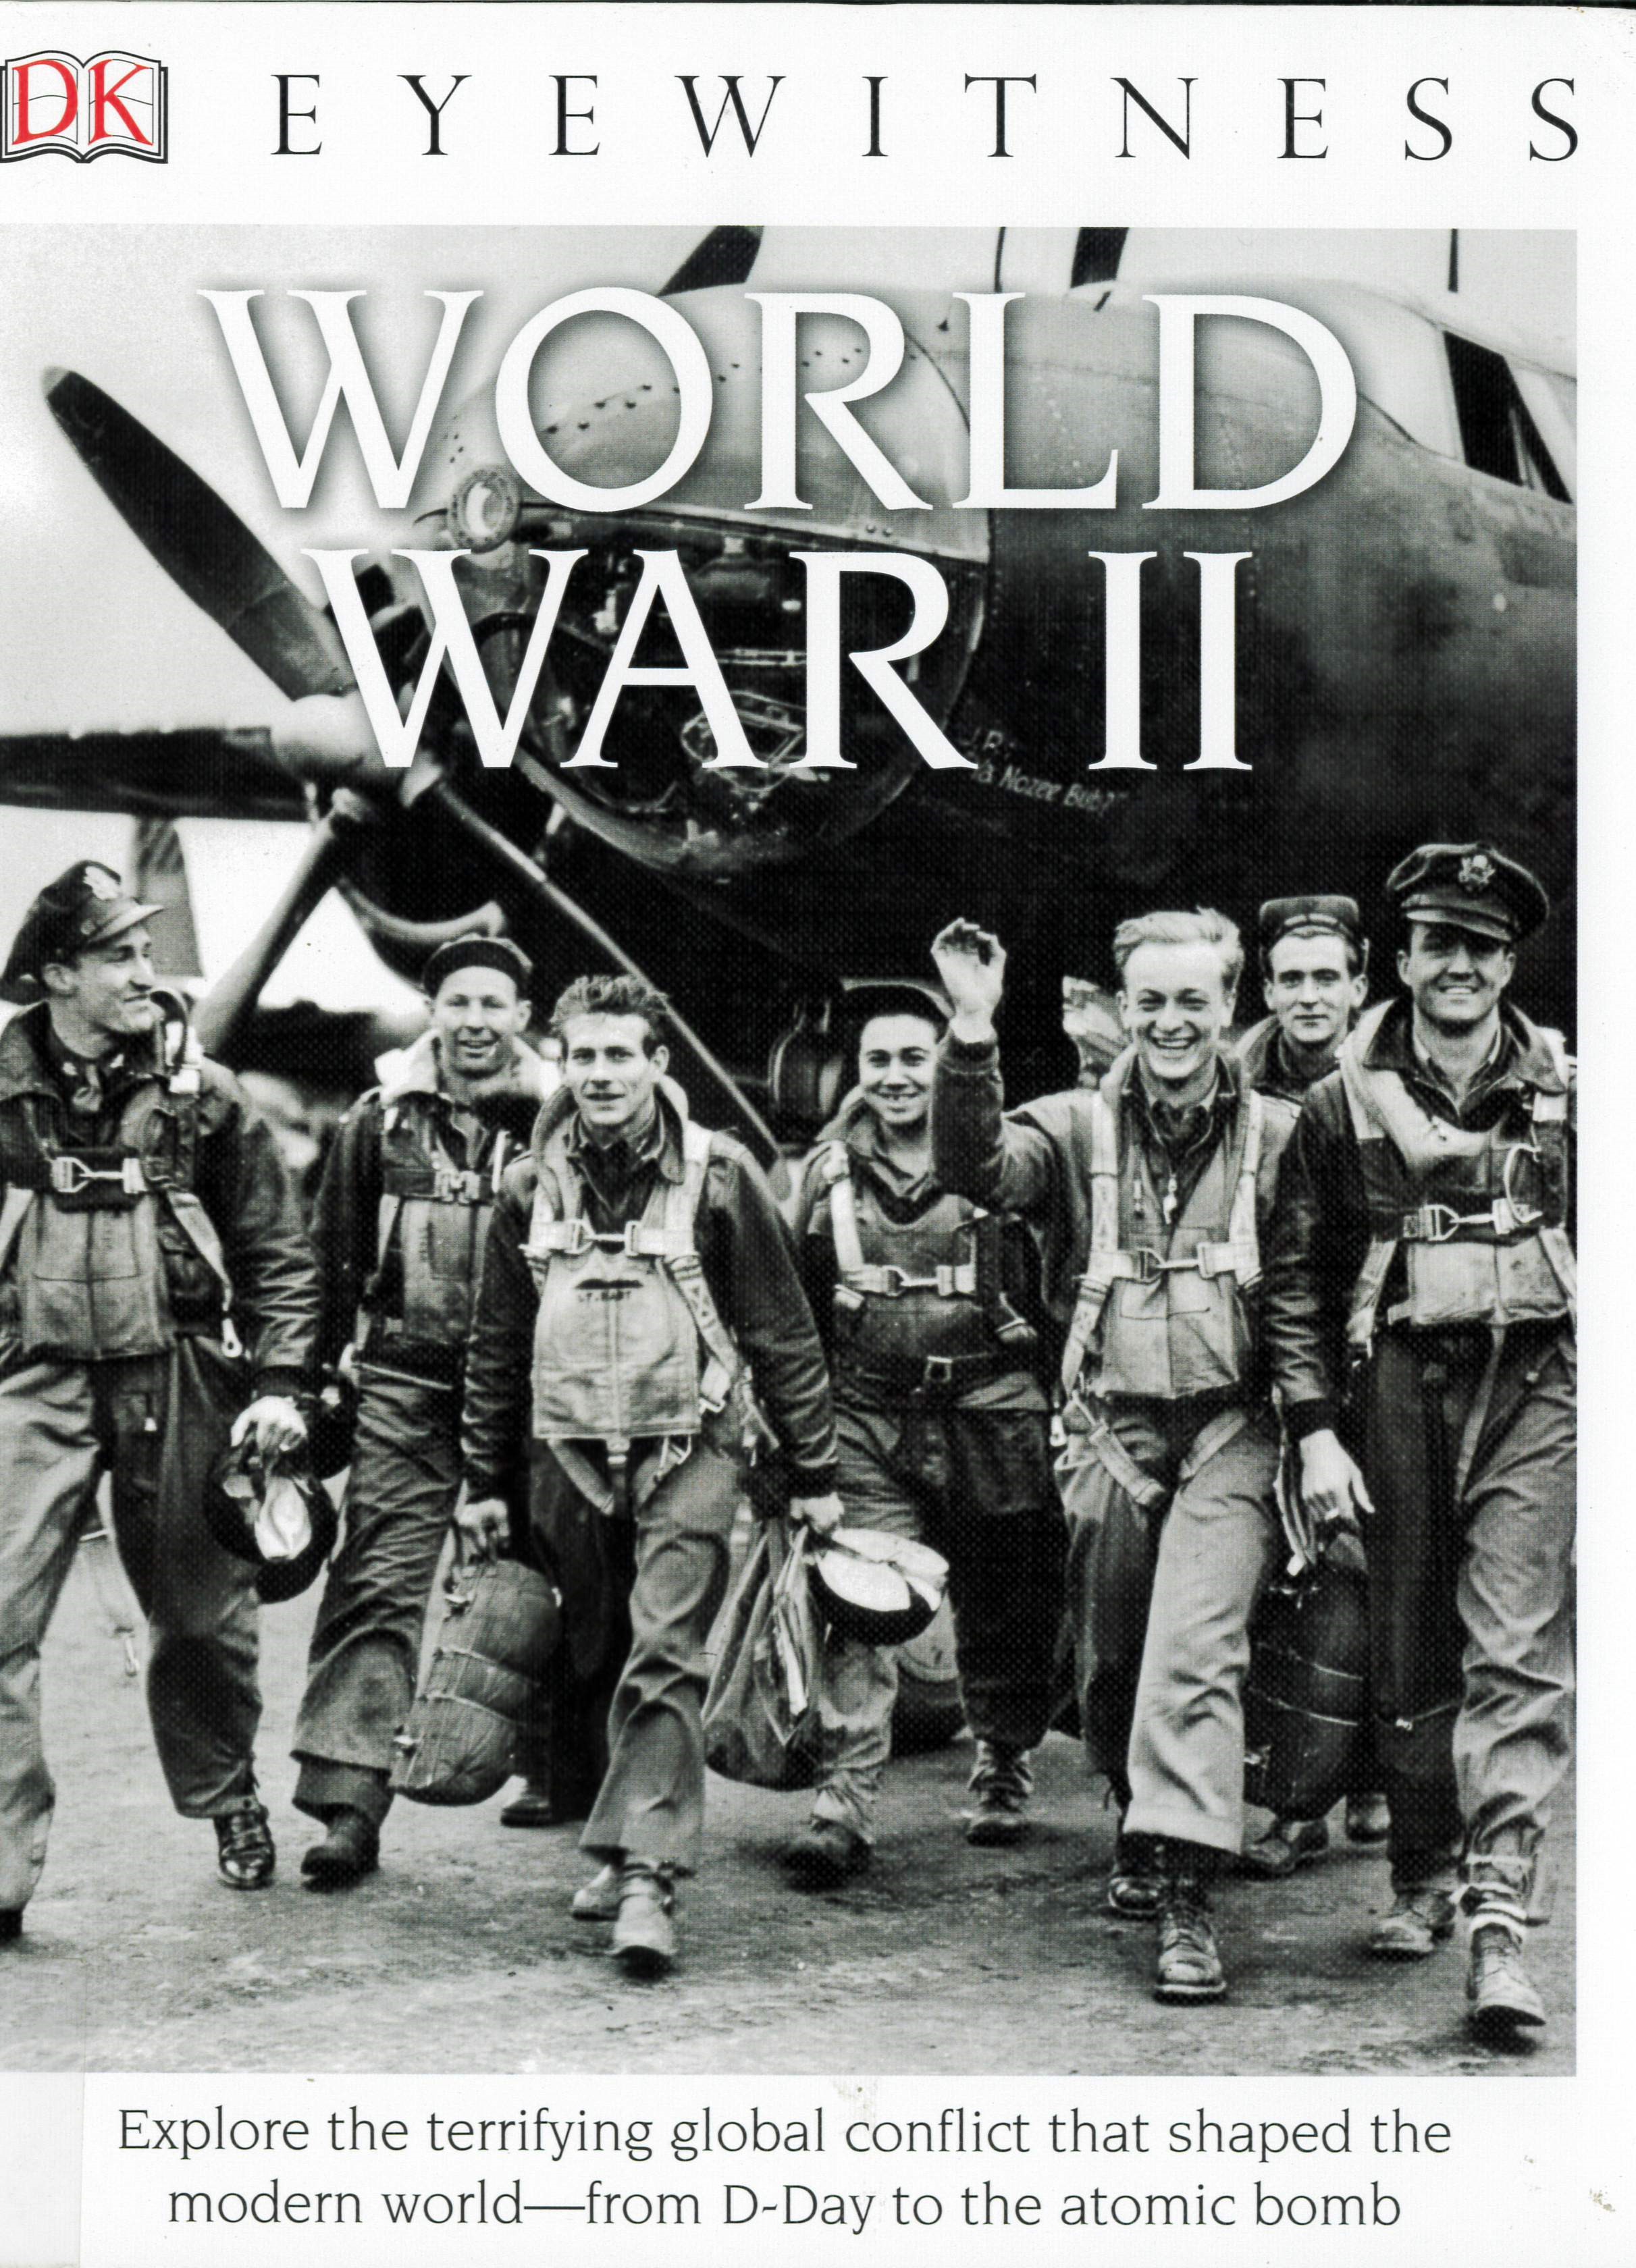 World War II /